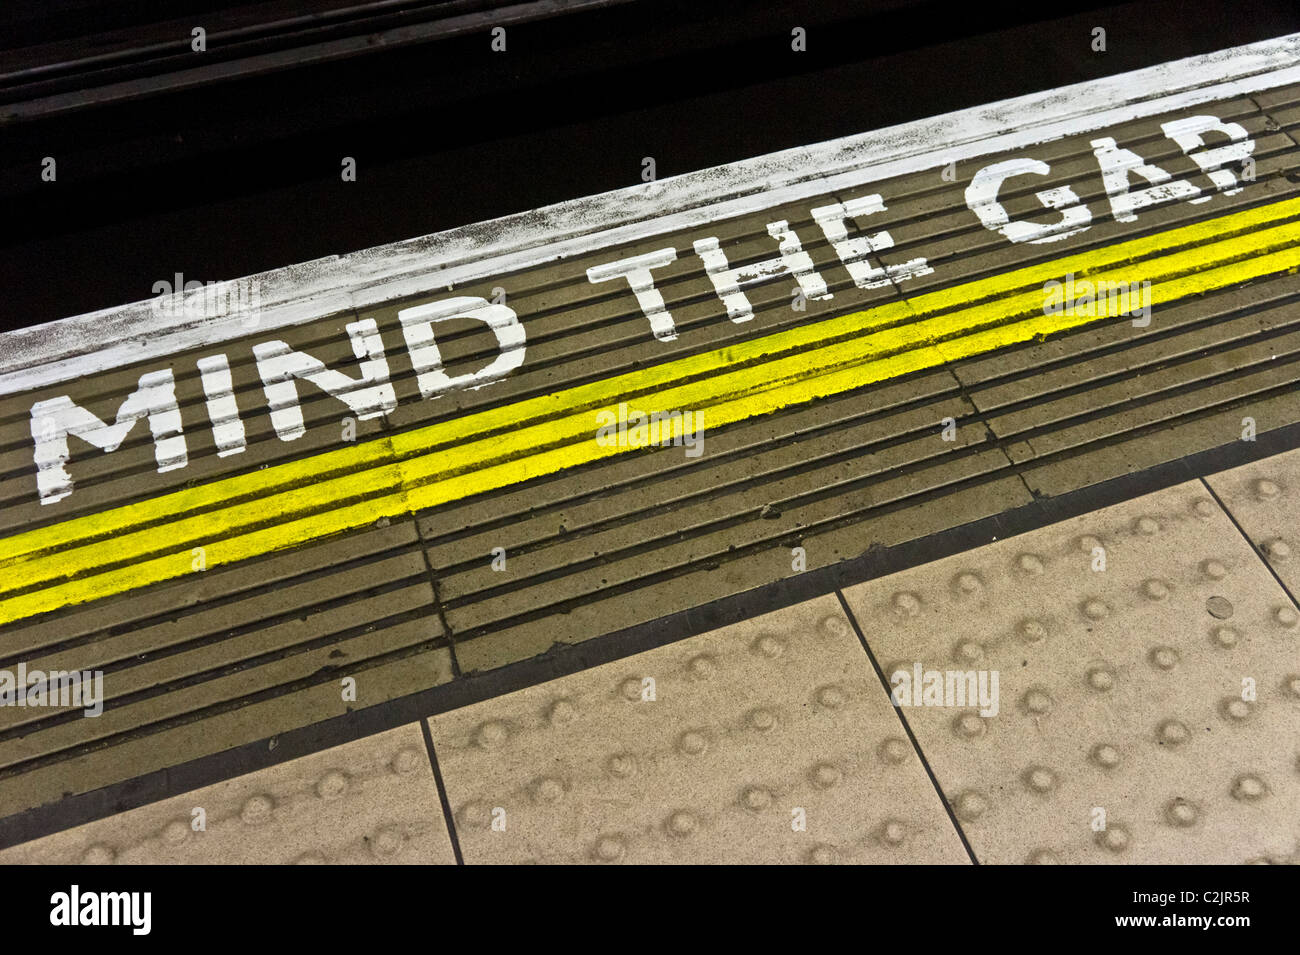 Cuenta la brecha de alerta sobre el borde de la plataforma de la estación de metro de Londres, Londres, Inglaterra Foto de stock